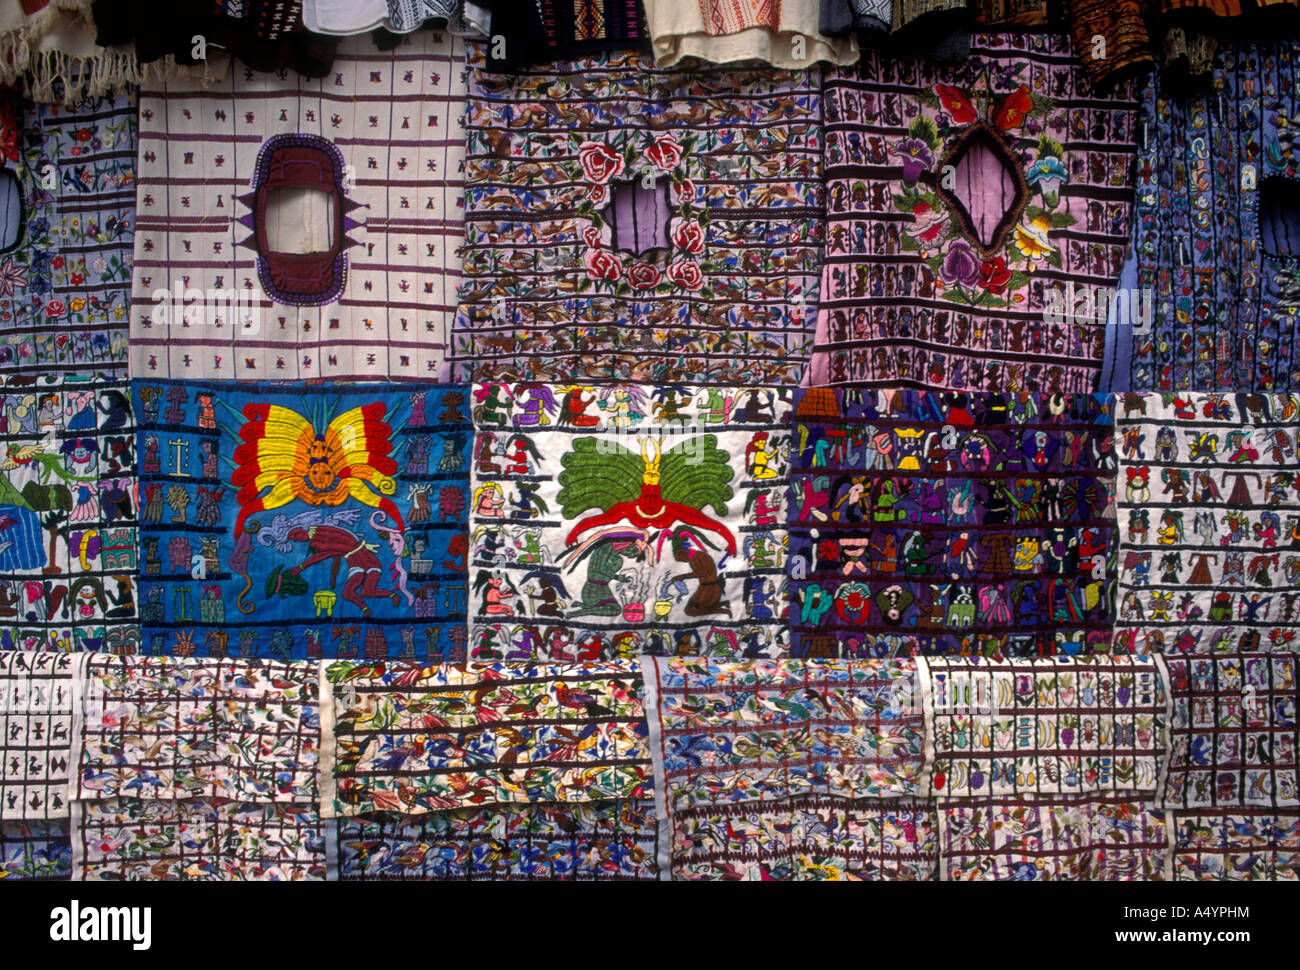 Guatemalan vendor stall in the town of Panajachel in Solola Department Guatemala Stock Photo